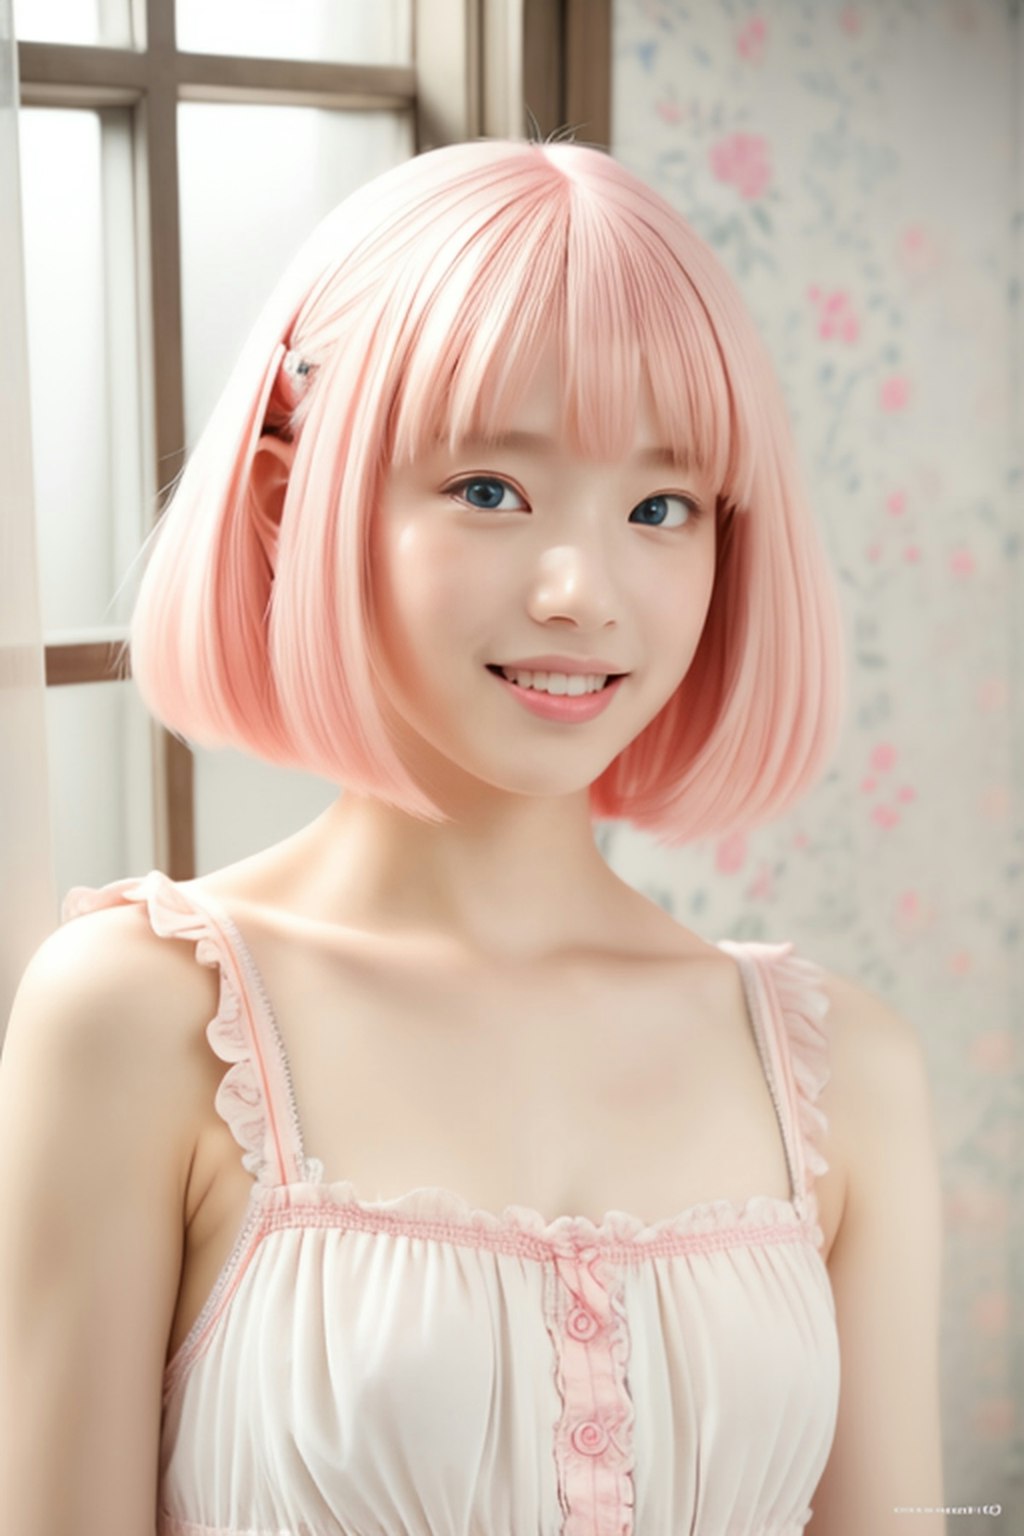 ピンク髪